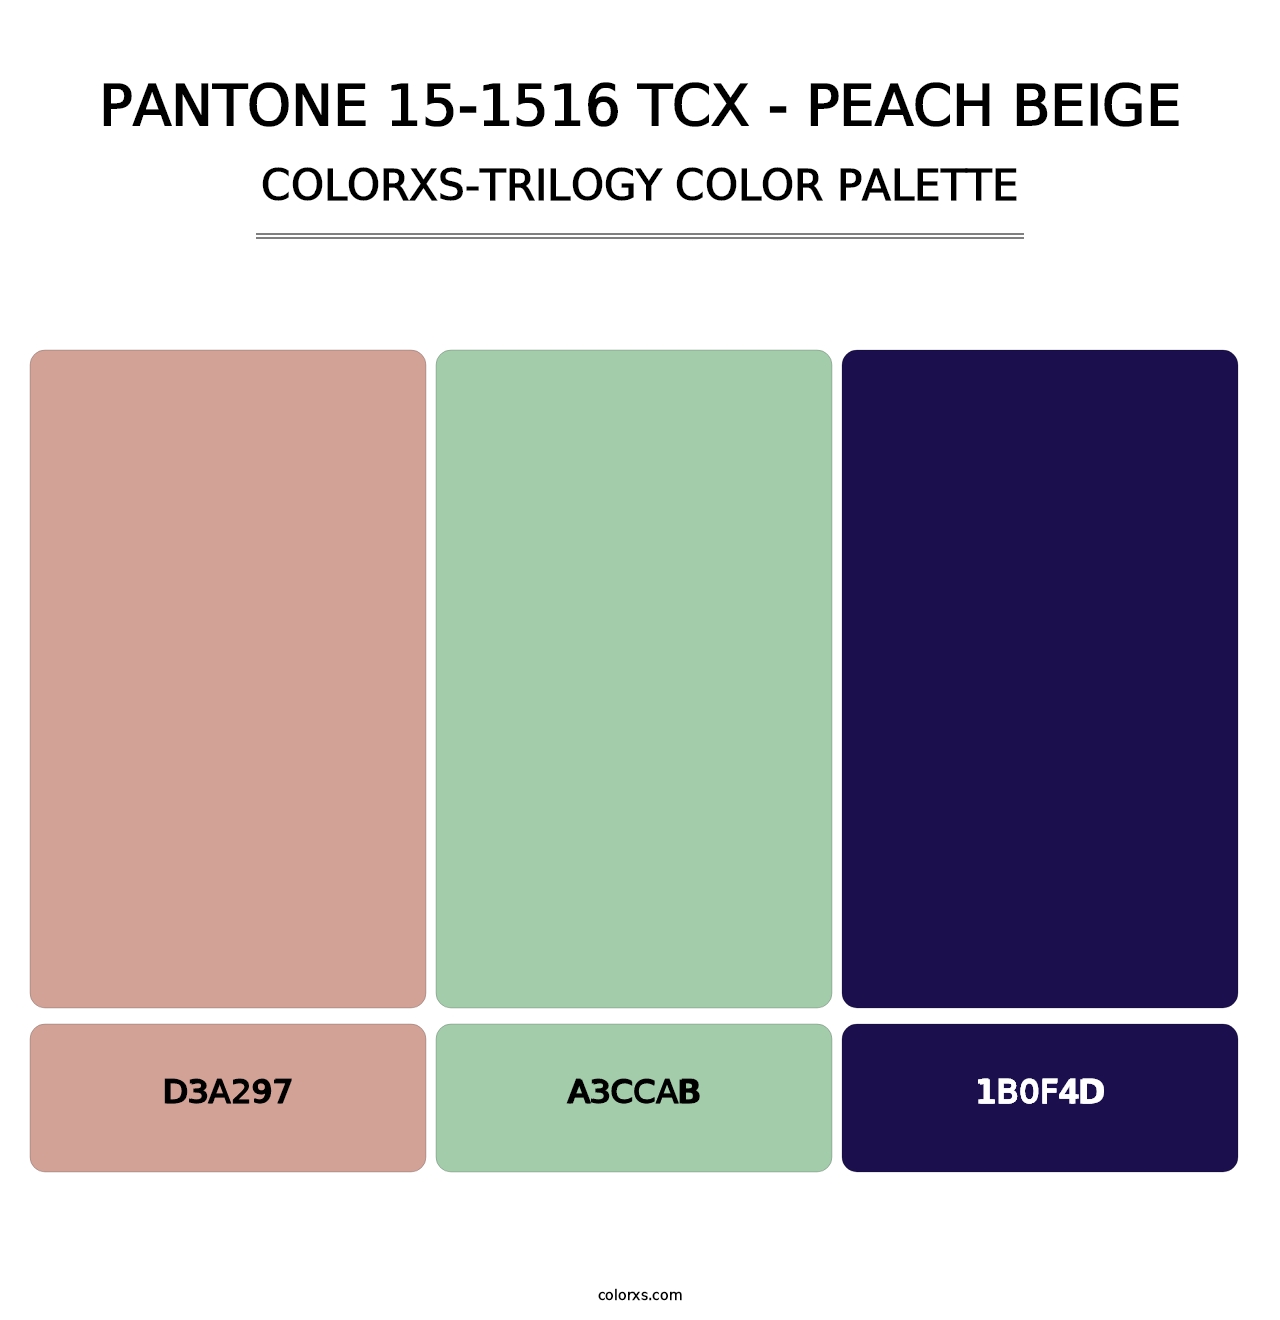 PANTONE 15-1516 TCX - Peach Beige - Colorxs Trilogy Palette